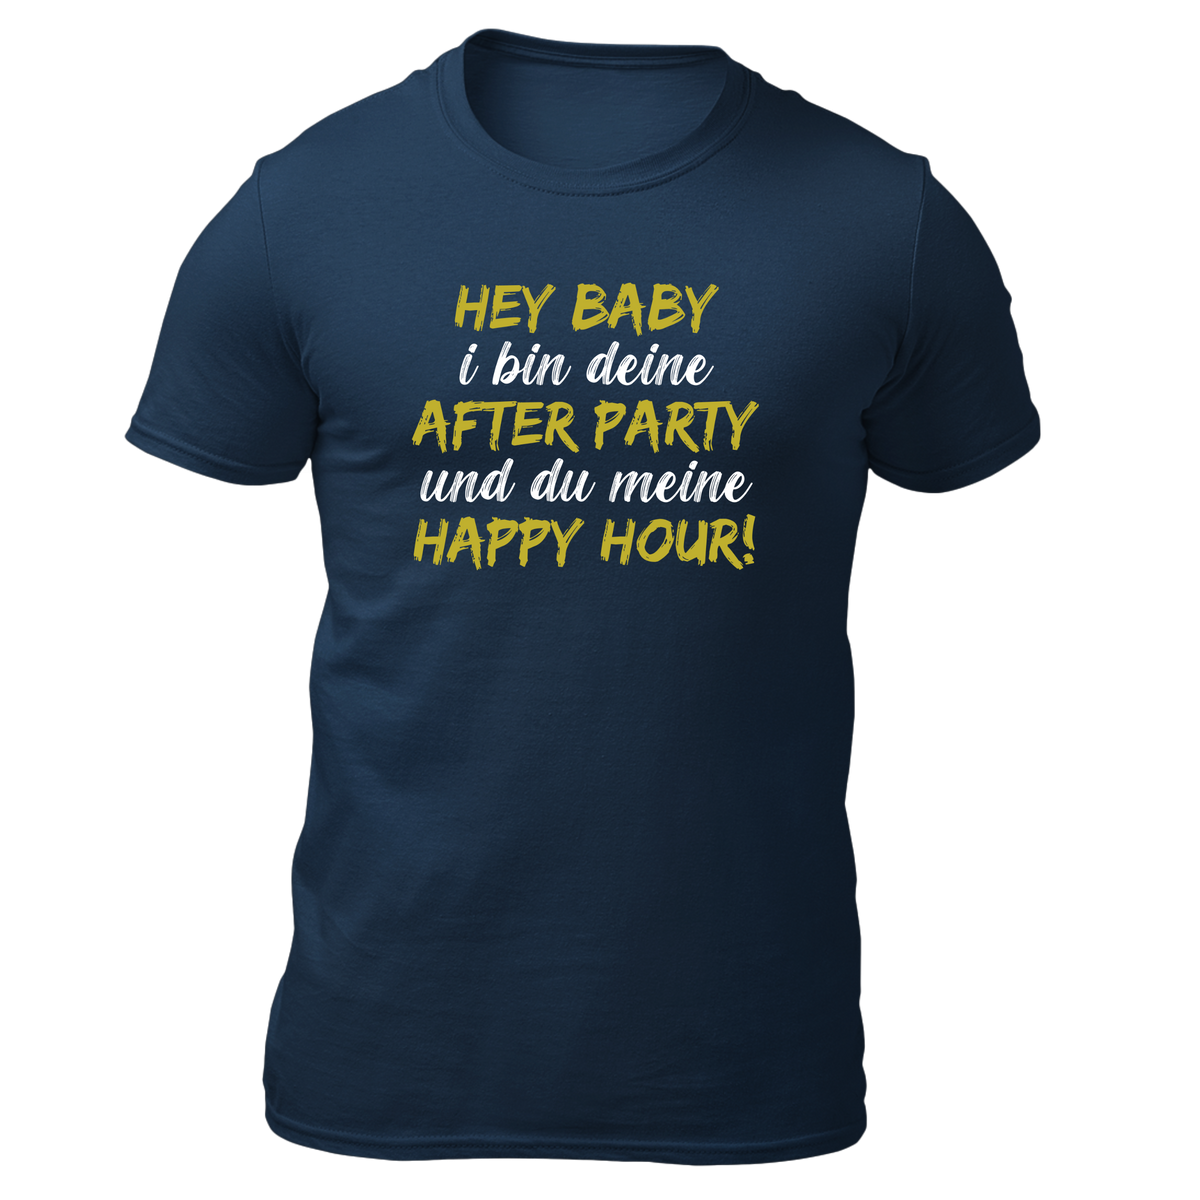 Hey Baby - Herren Shirt Bio - Navy / XS - Shirts & Tops